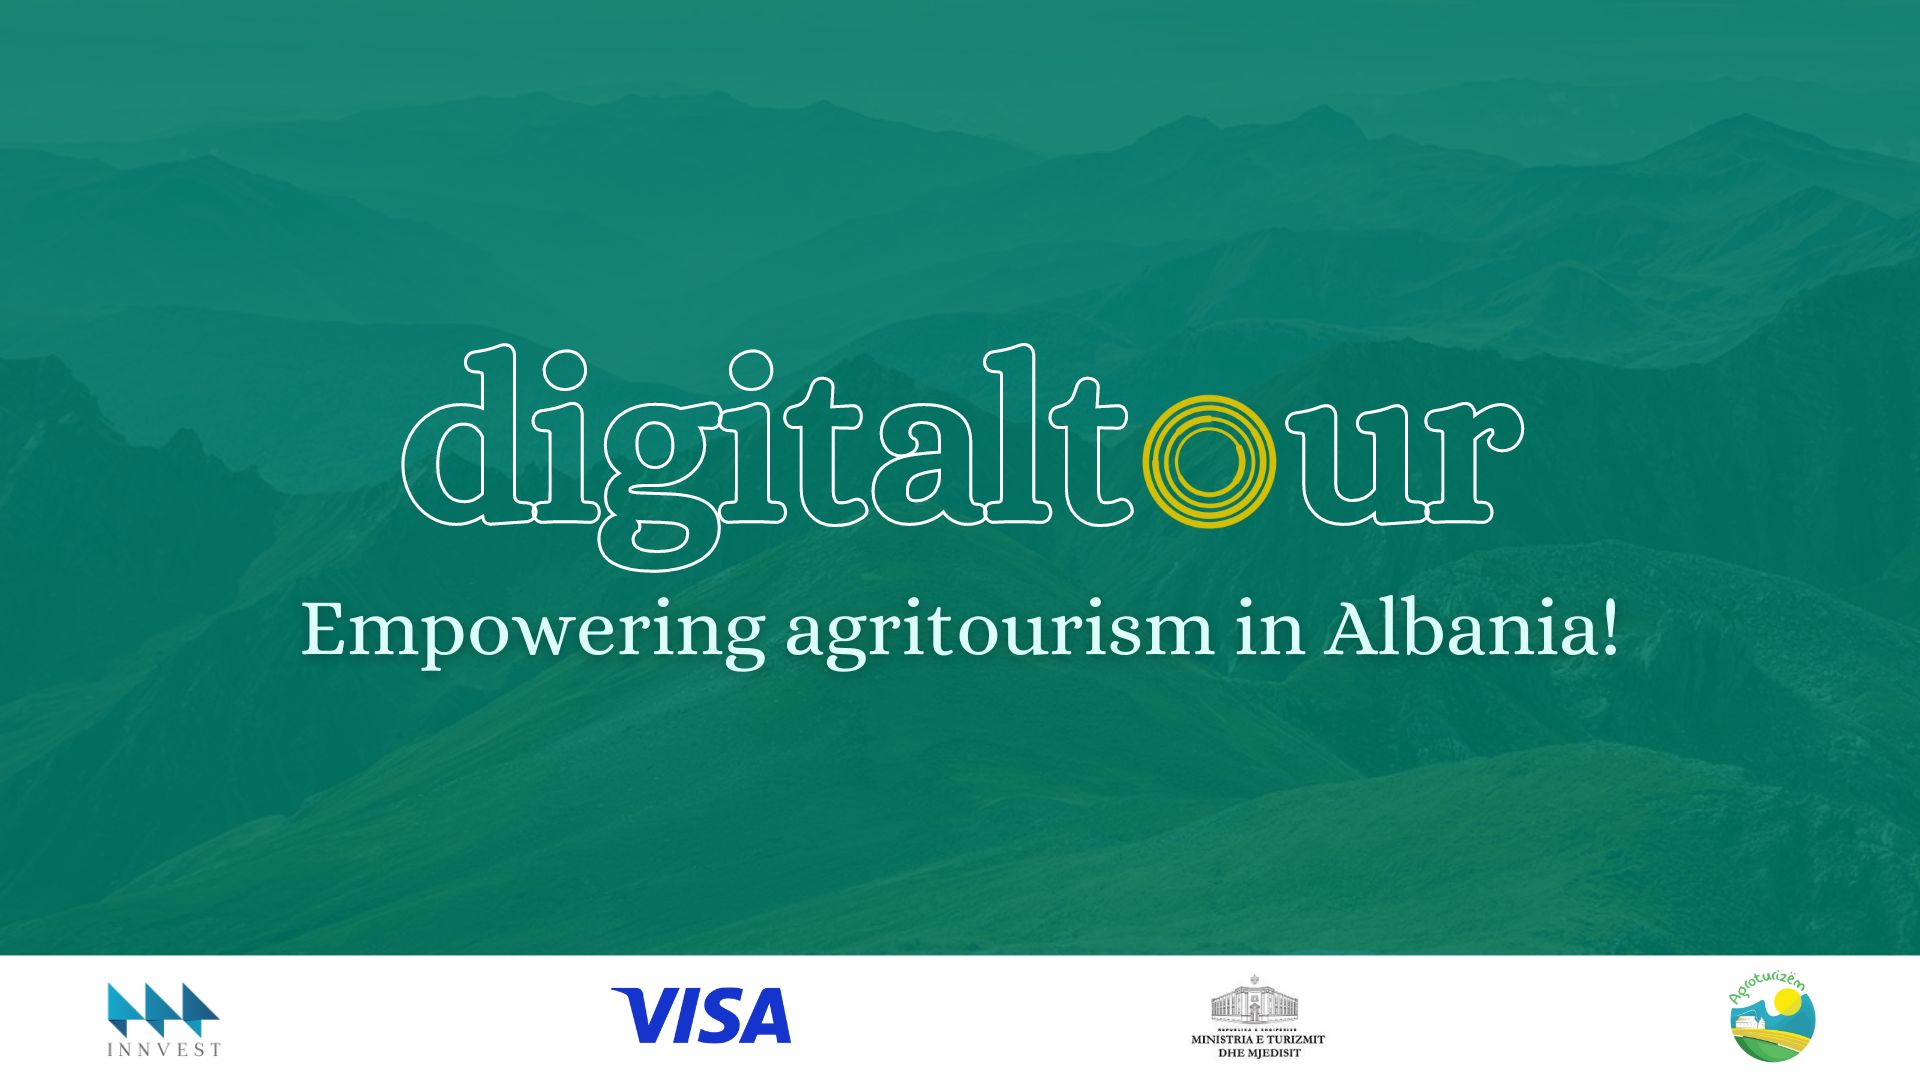 digitaltour: Fuqizimi i agroturizmit në Shqipëri përmes pagesave digjitale